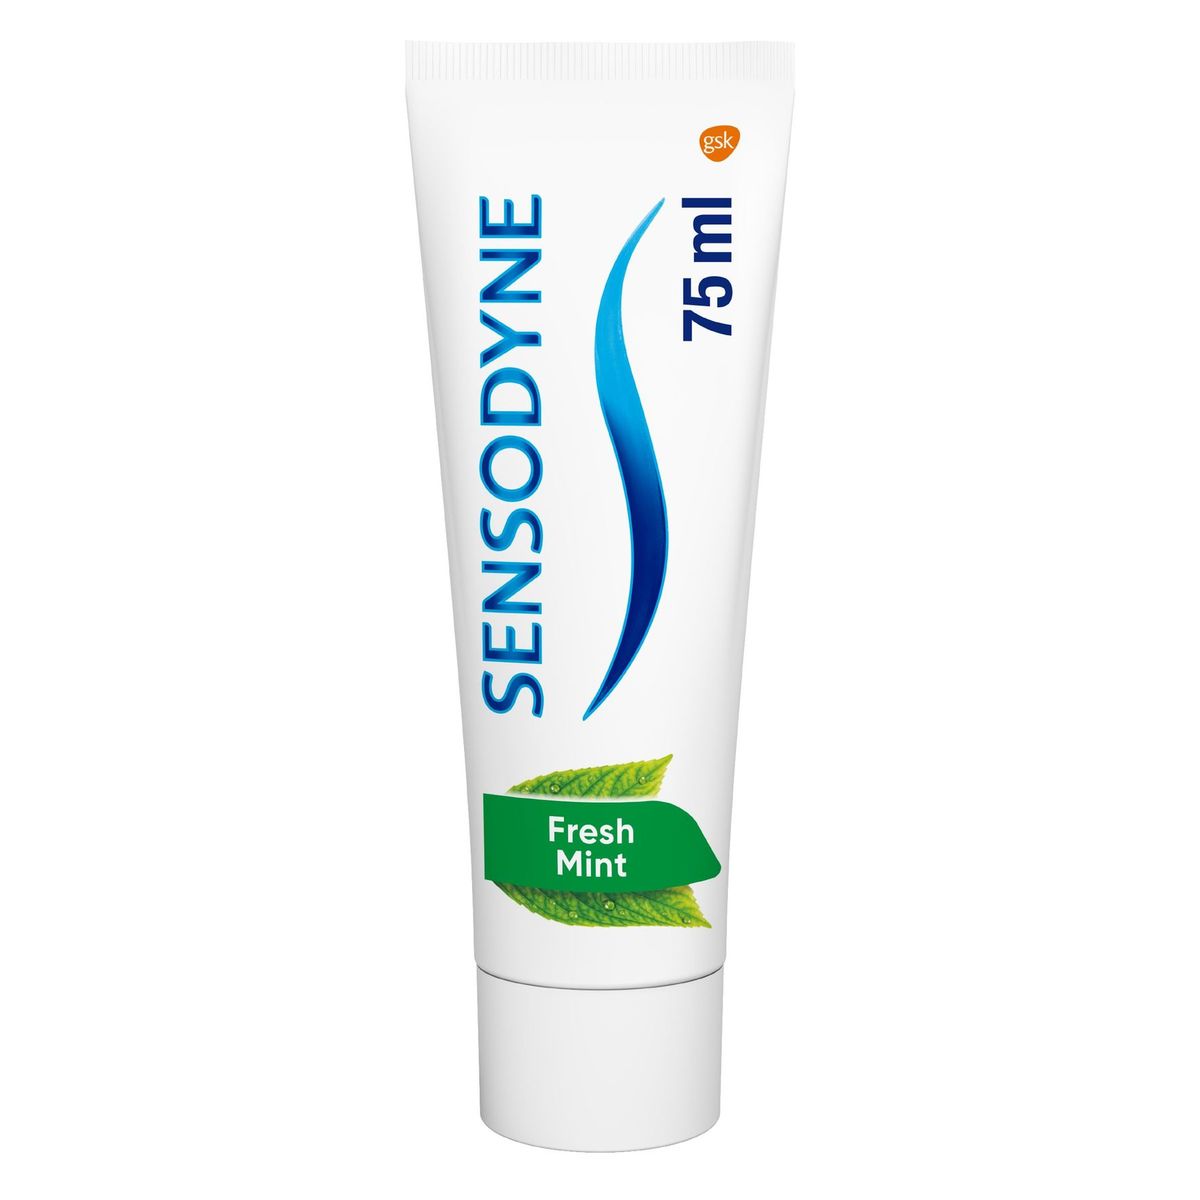 Sensodyne Freshmint Tandpasta voor gevoelige tanden 75 ml